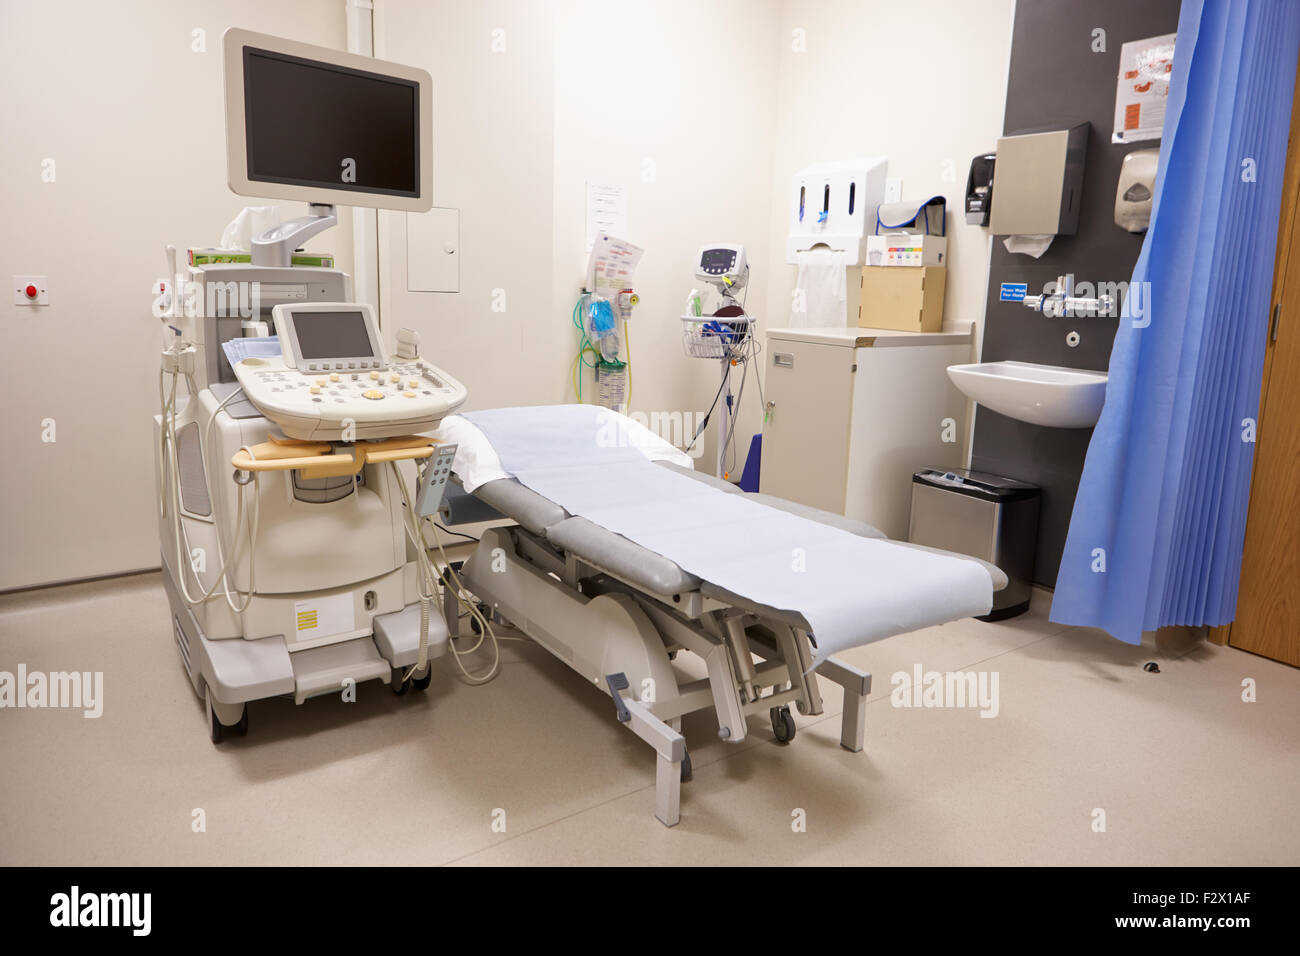 Behandlungsbereich In moderne Krankenhaus mit Ultraschallgerät Stockfoto